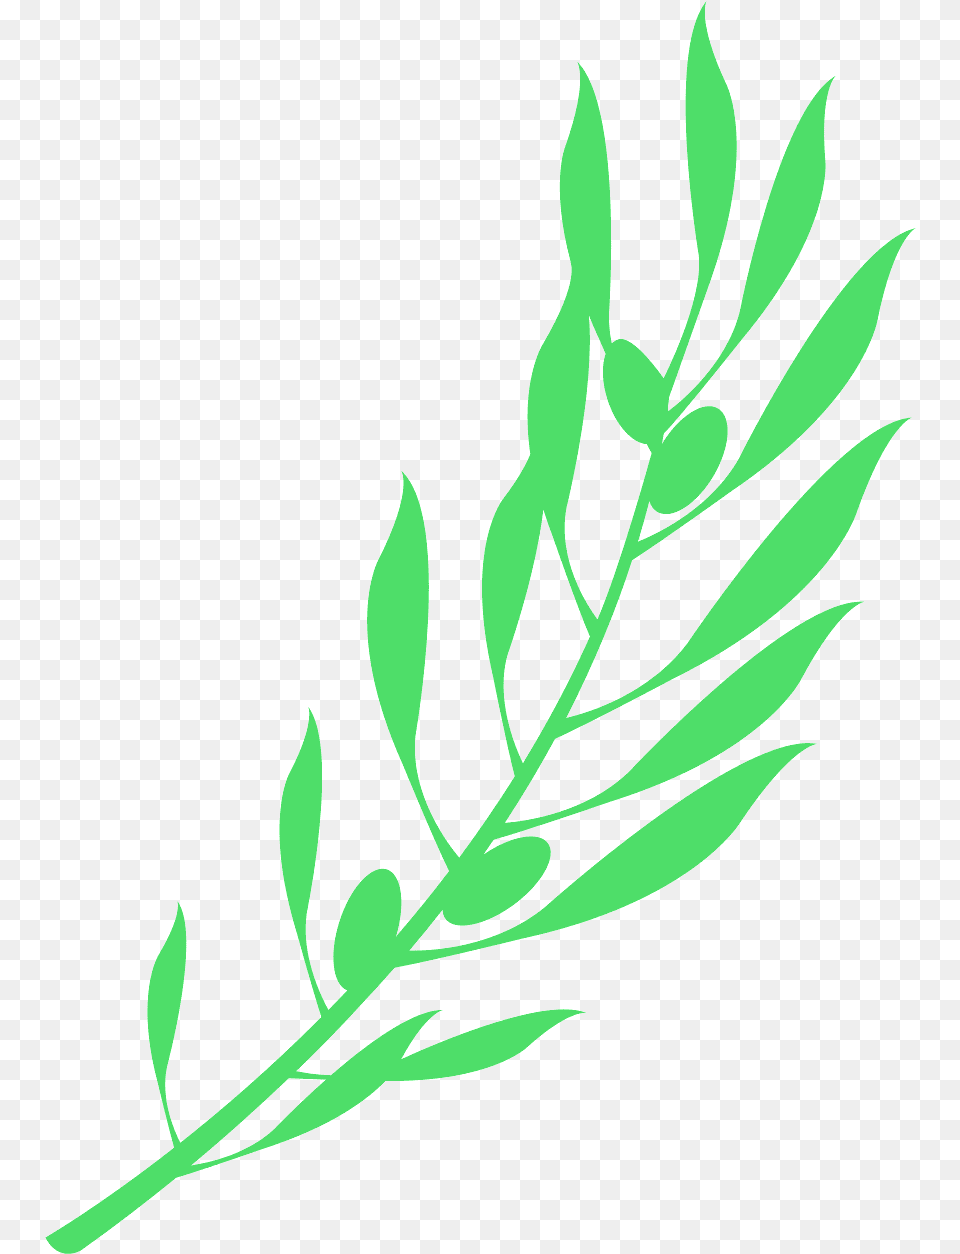 Rama De Olivo, Green, Herbal, Herbs, Leaf Png Image